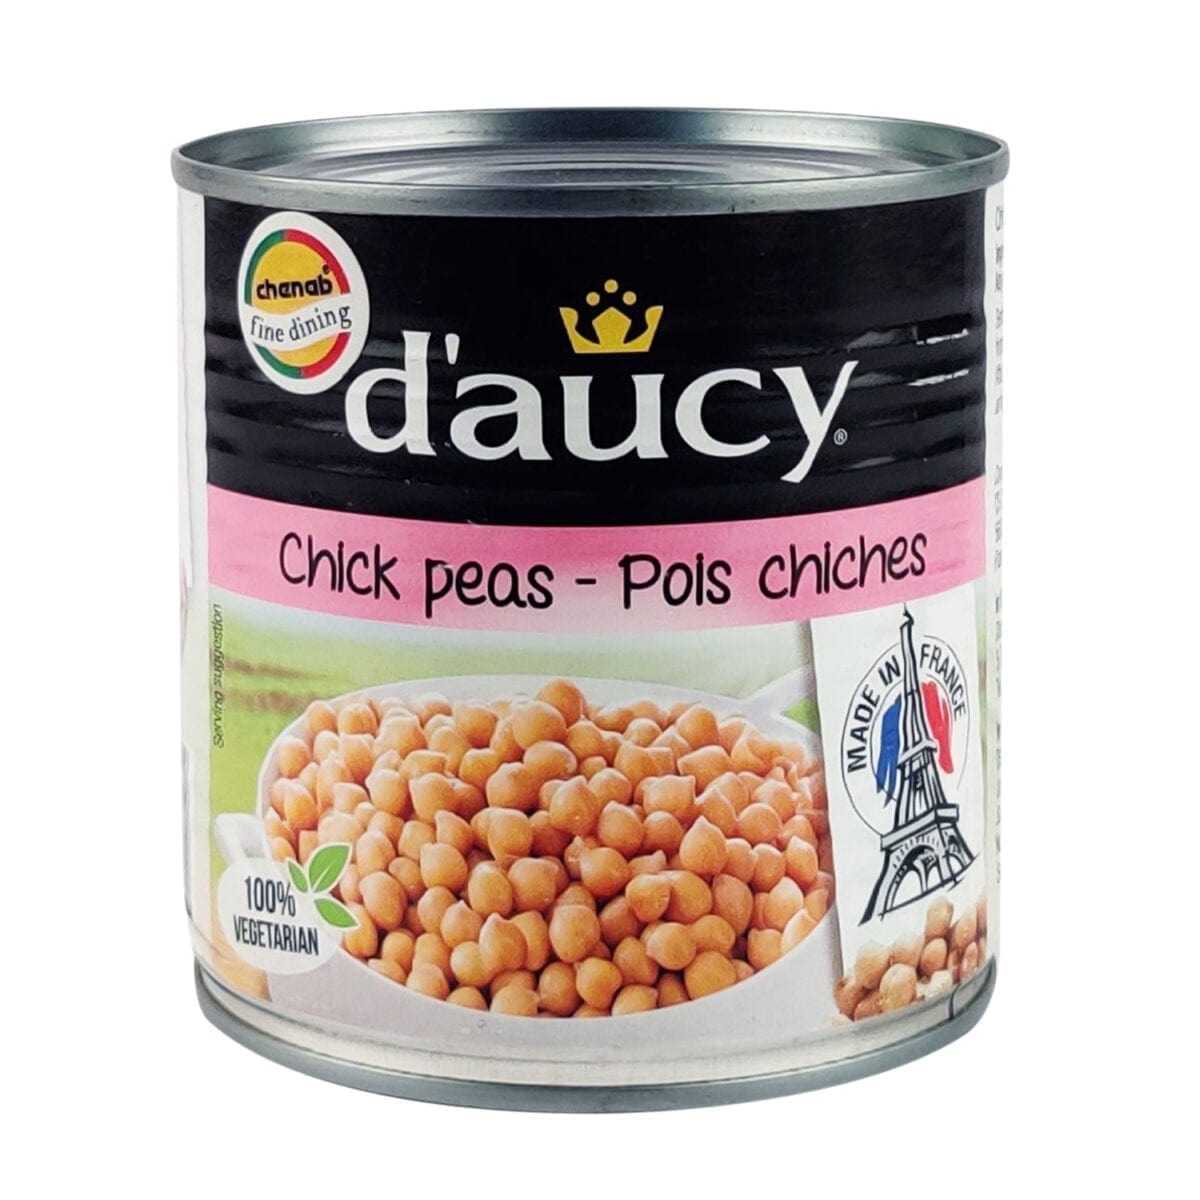 daucy-chick-peas-400g